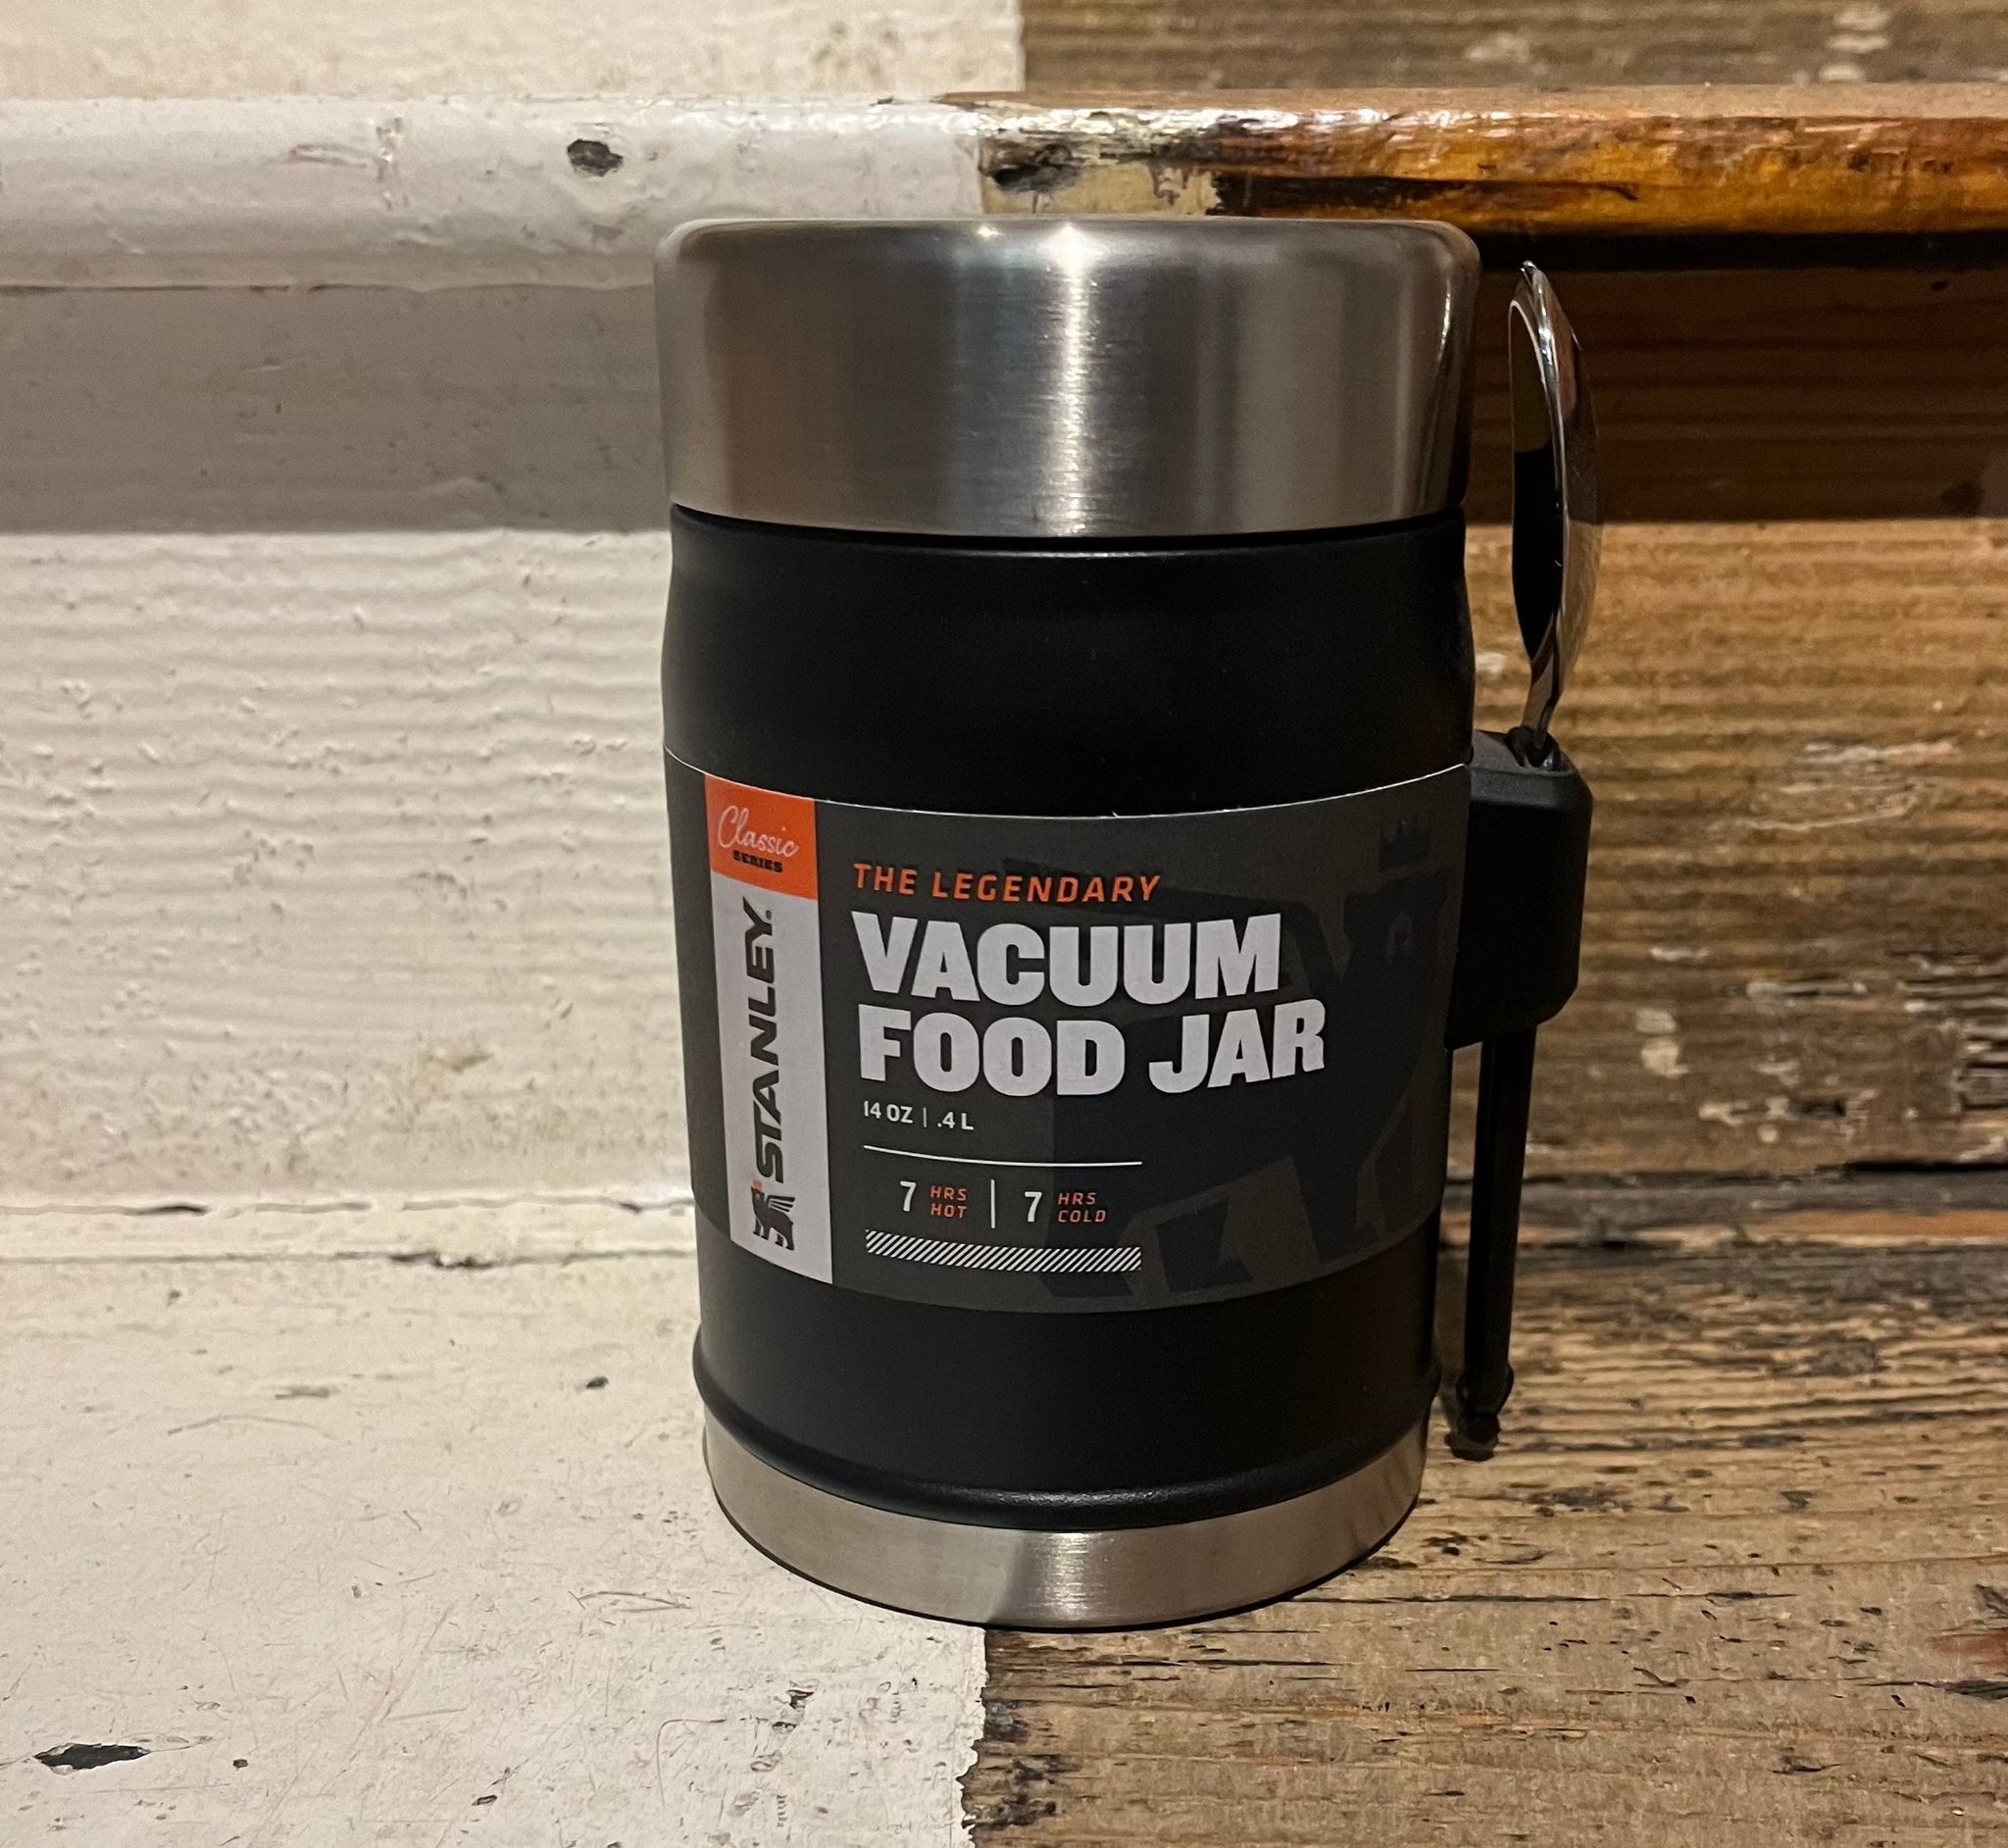 Stanley - Legendary Vacuum Food Jar - 14oz - Black